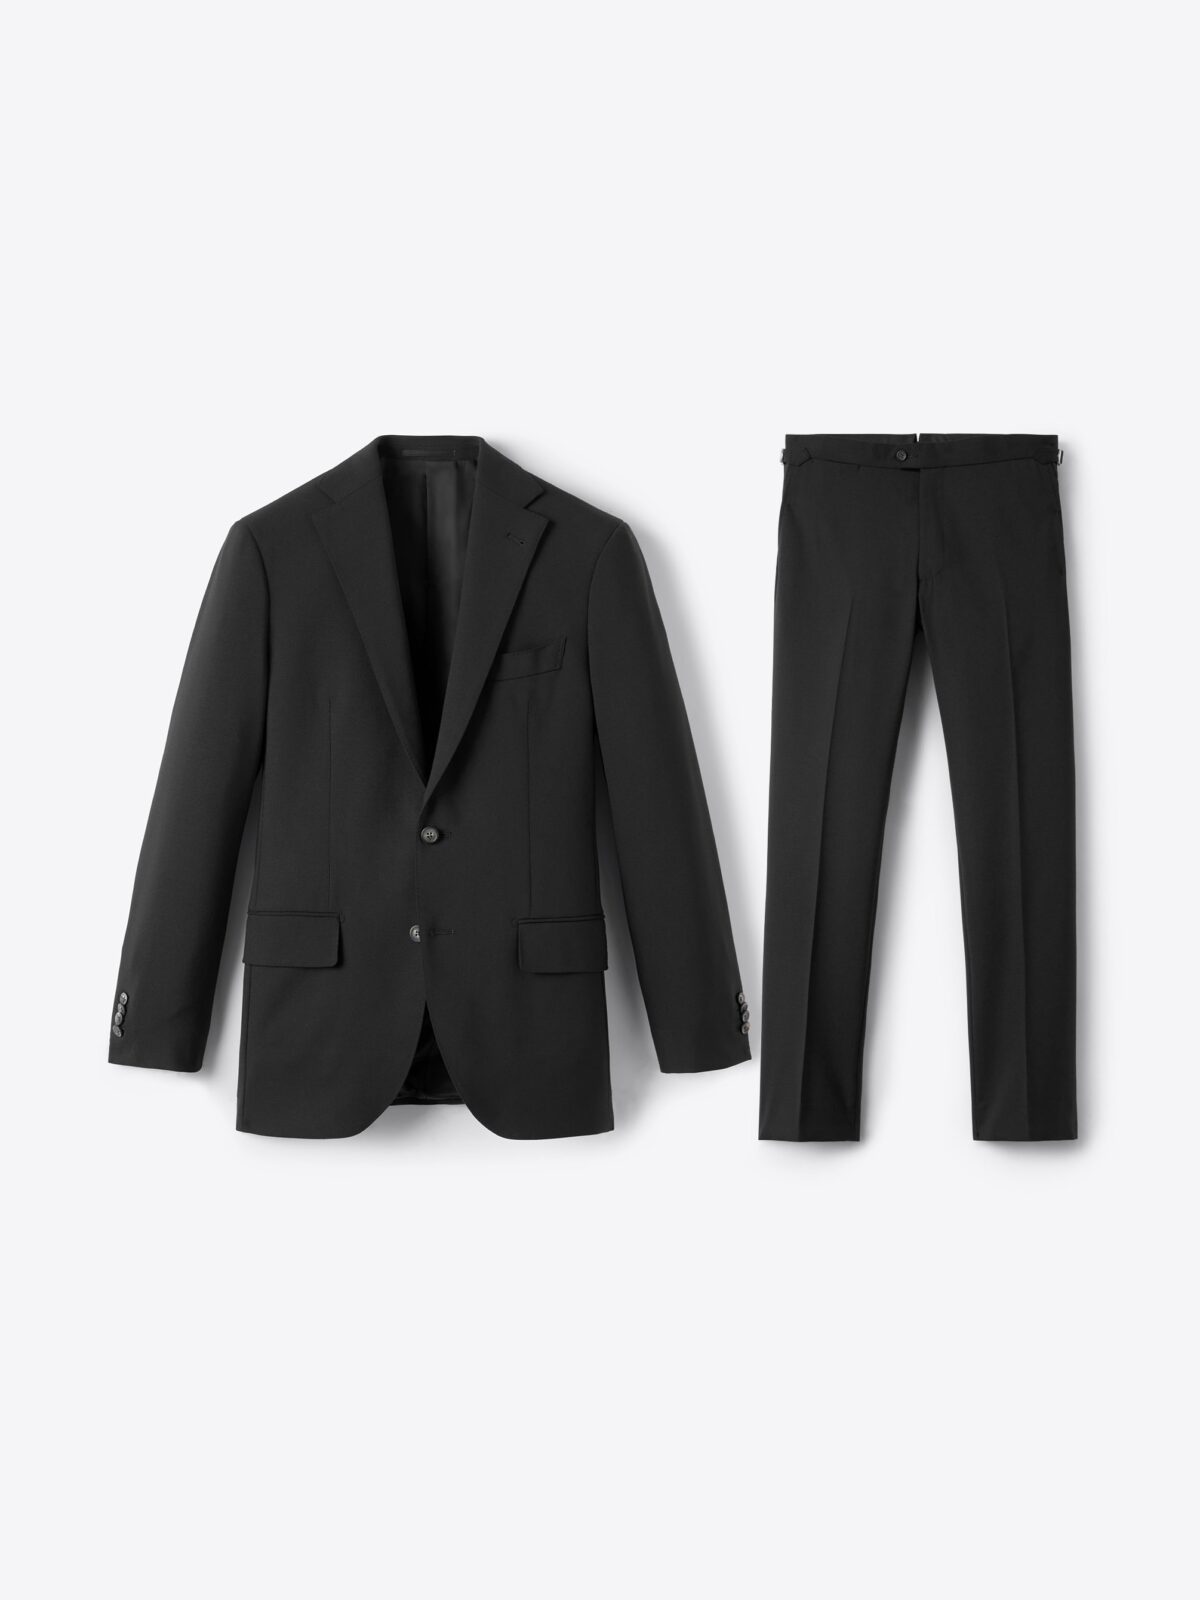 Mens Suits 9XL Jacket Vest Pants Suit Fat Plus Size Men'S Latest Coat  Pant Designs Business Set Wedding Dress Blazers From Qiyuancai, $111.57 |  DHgate.Com